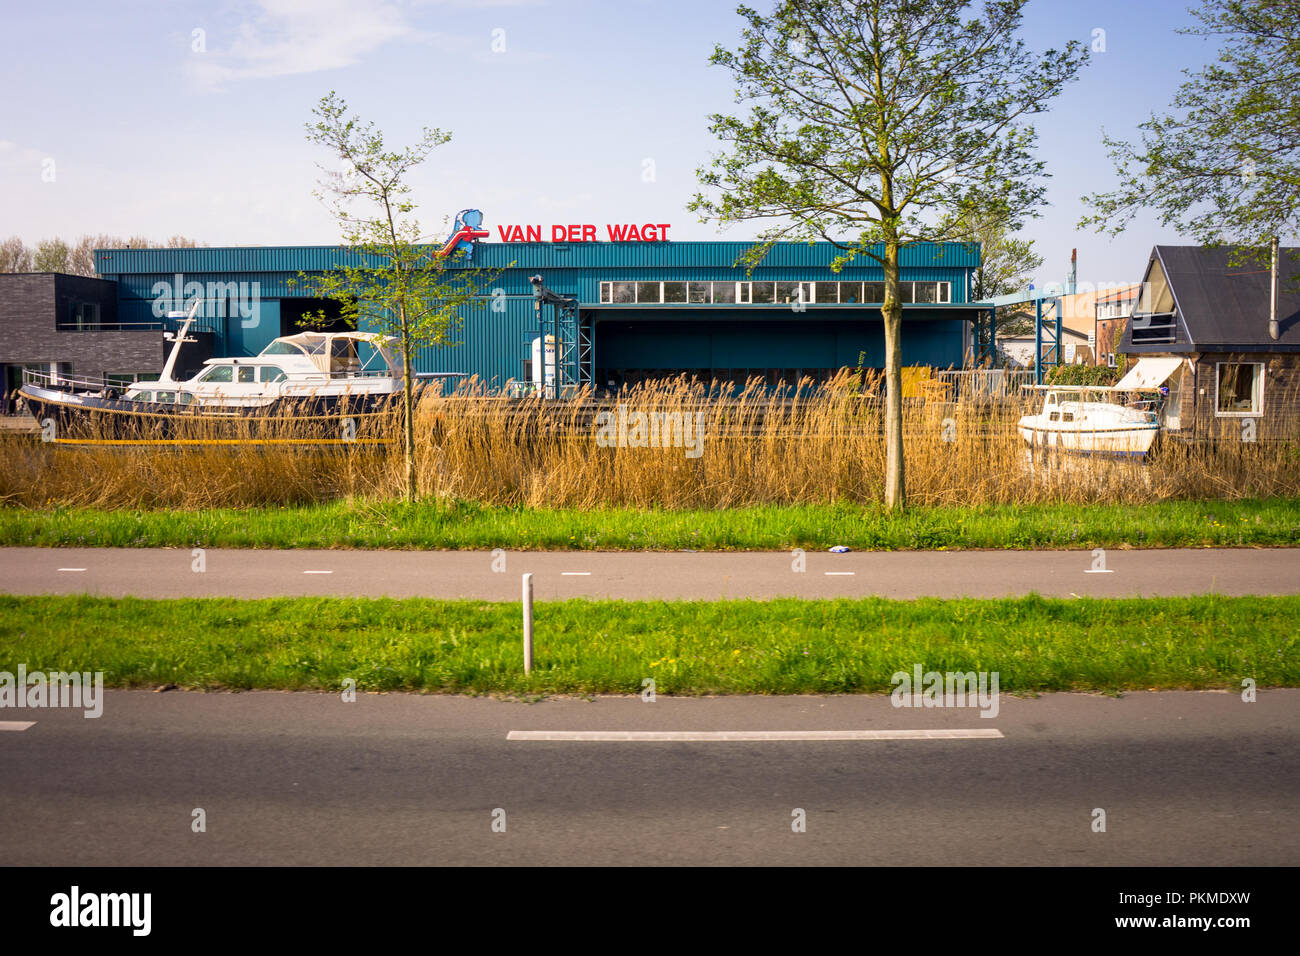 Leiden, Niederlande - 22 April 2018: Farbige Boote auf einem Kanal außerhalb der van der wagt Gebäude geparkt Stockfoto